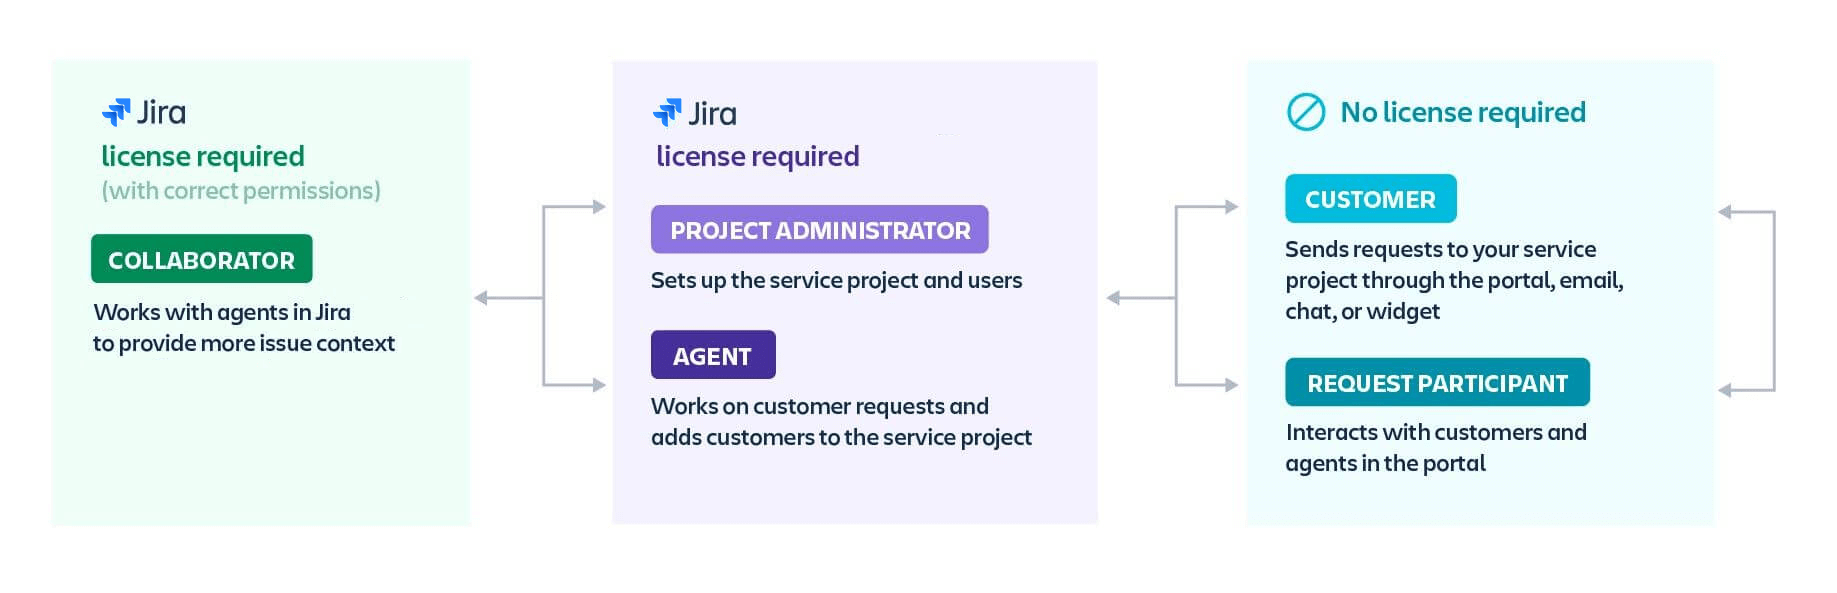 Jira Software 和 Jira Service Management 中的用户类型：协作者、项目管理员、支持人员、客户和请求参与者